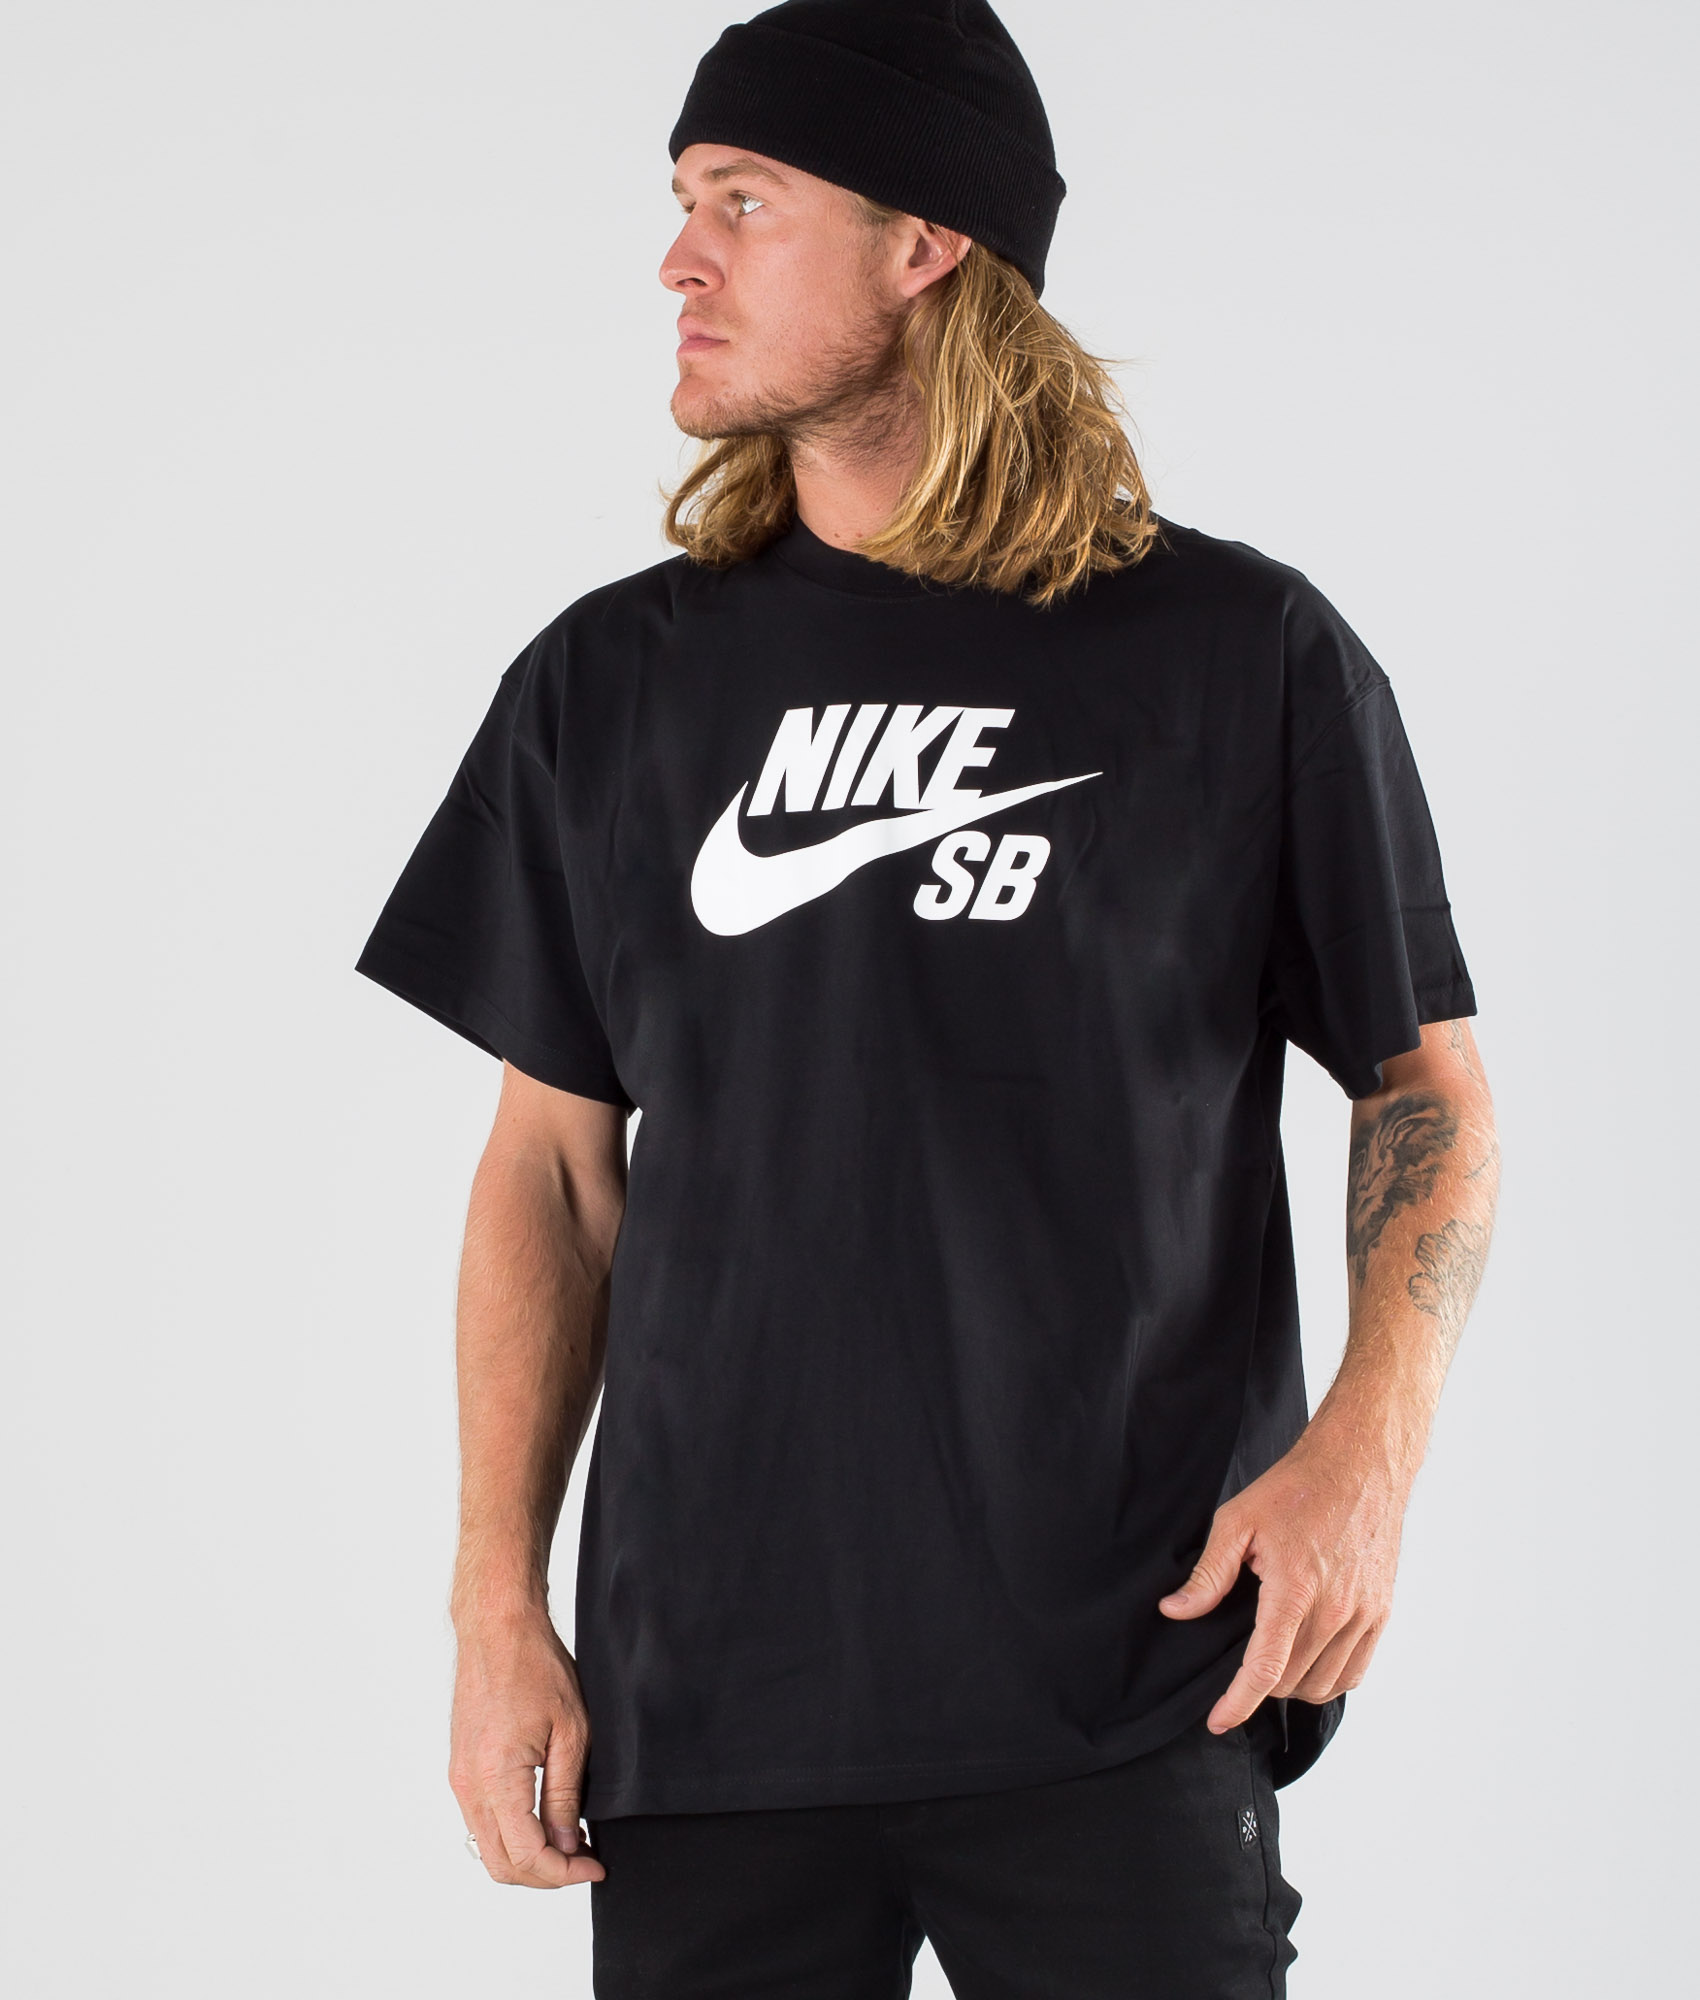 nike skateboard t shirt